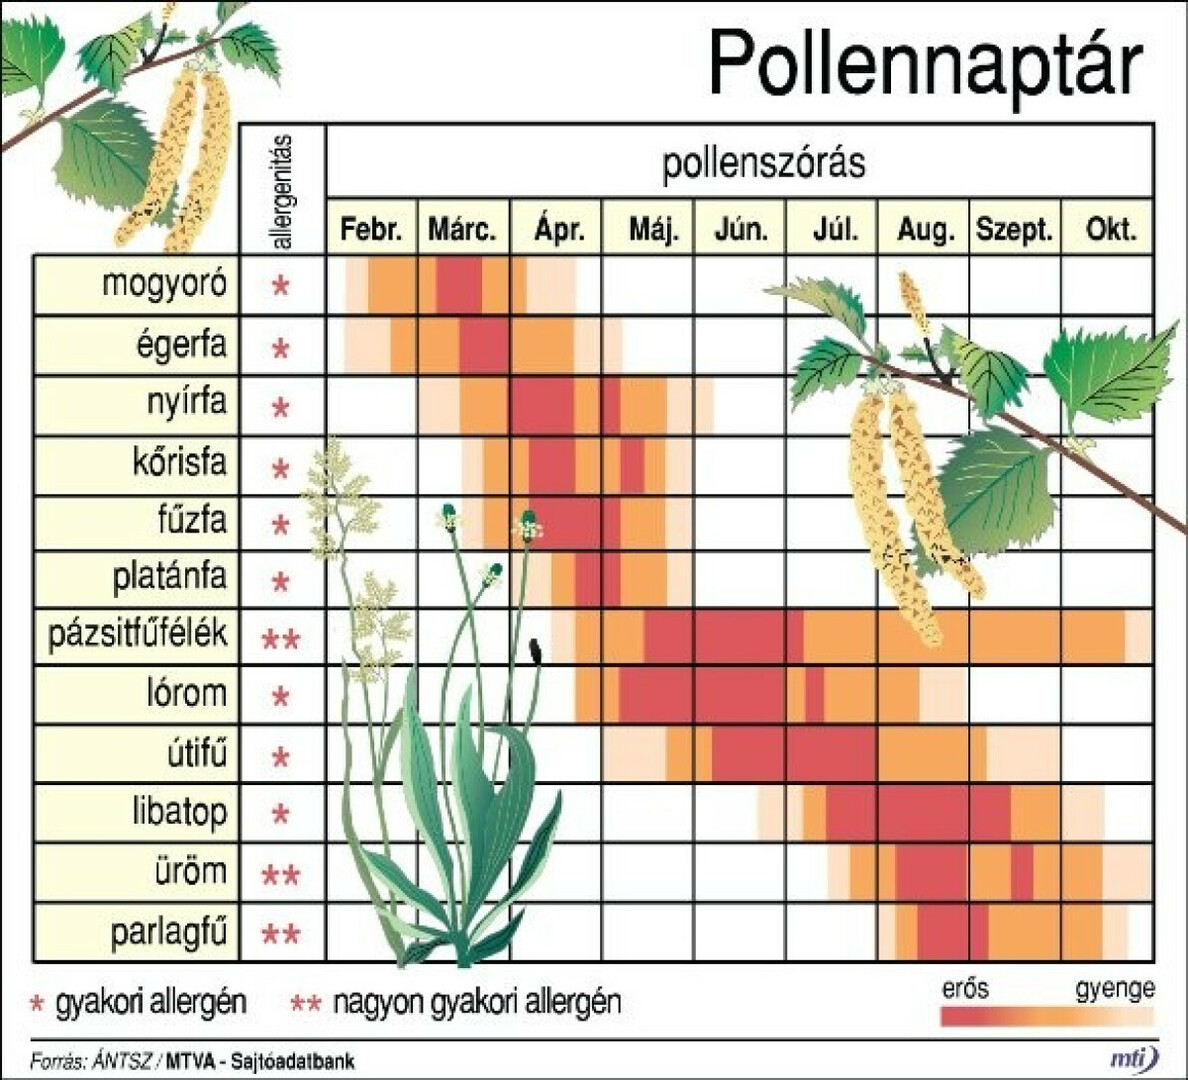 Szerezzünk be pollennaptárt, kövessük hétről hétre a pollenjelentést! 